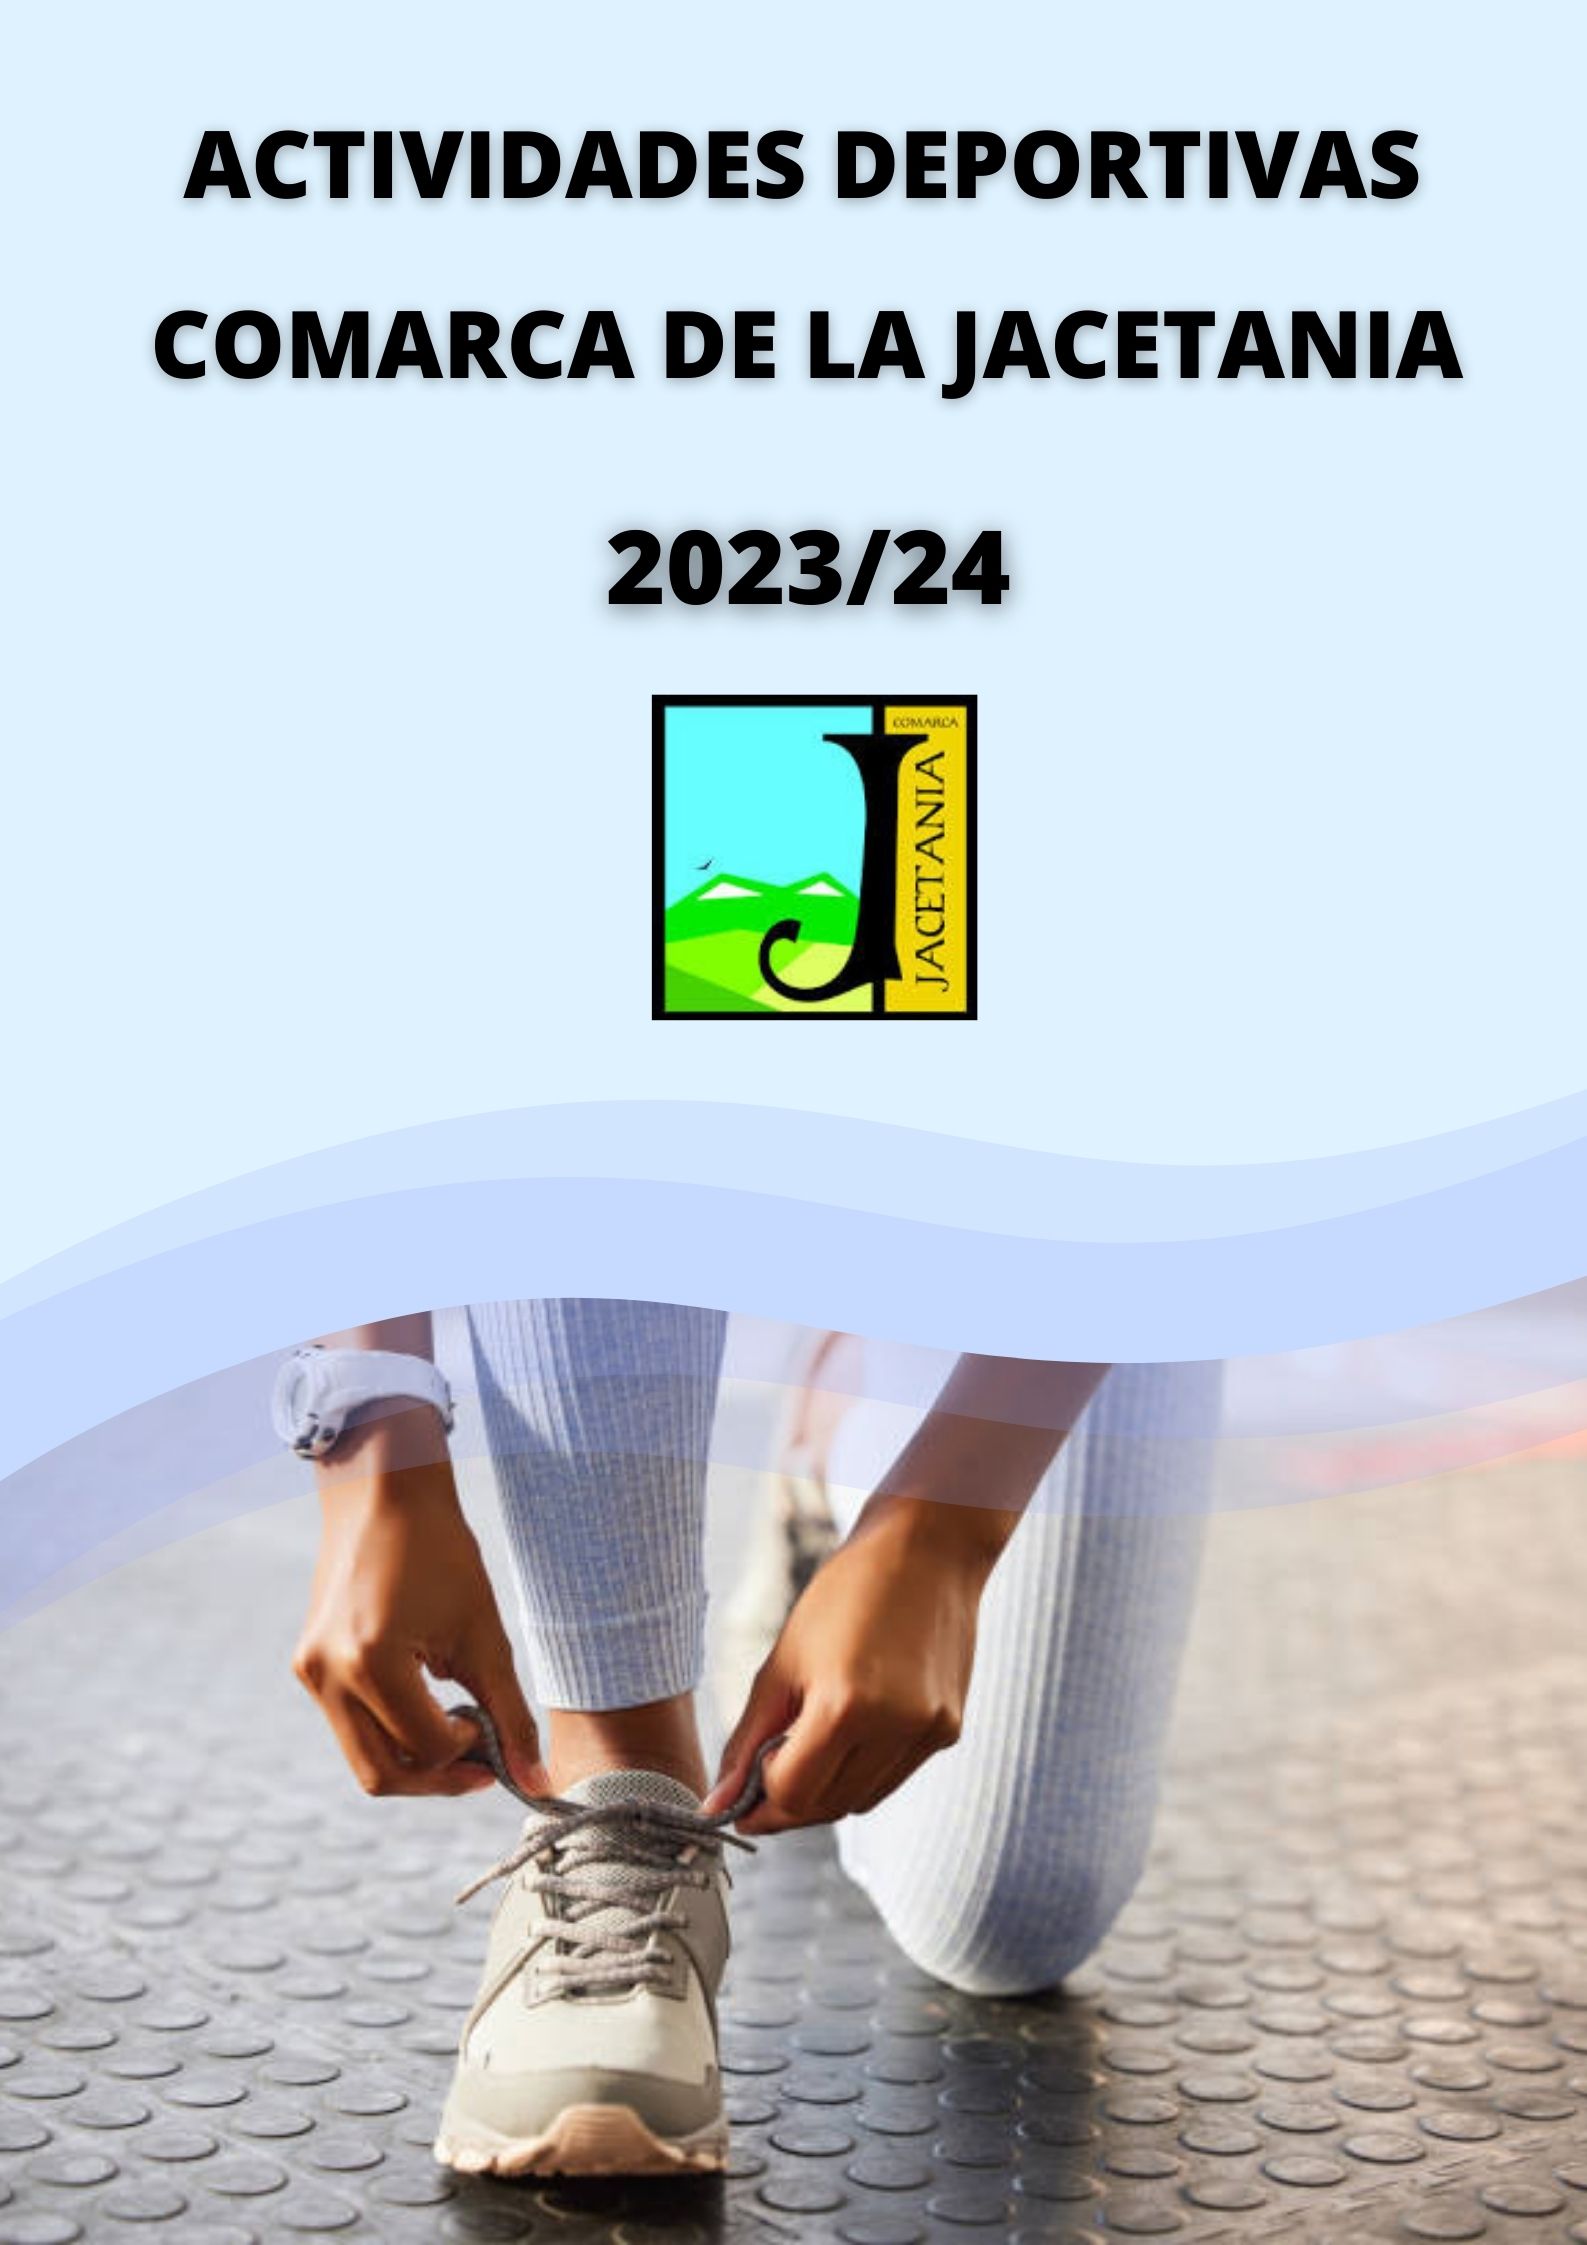 Las actividades deportivas de la Comarca de La Jacetania llegan este curso a 21 localidades